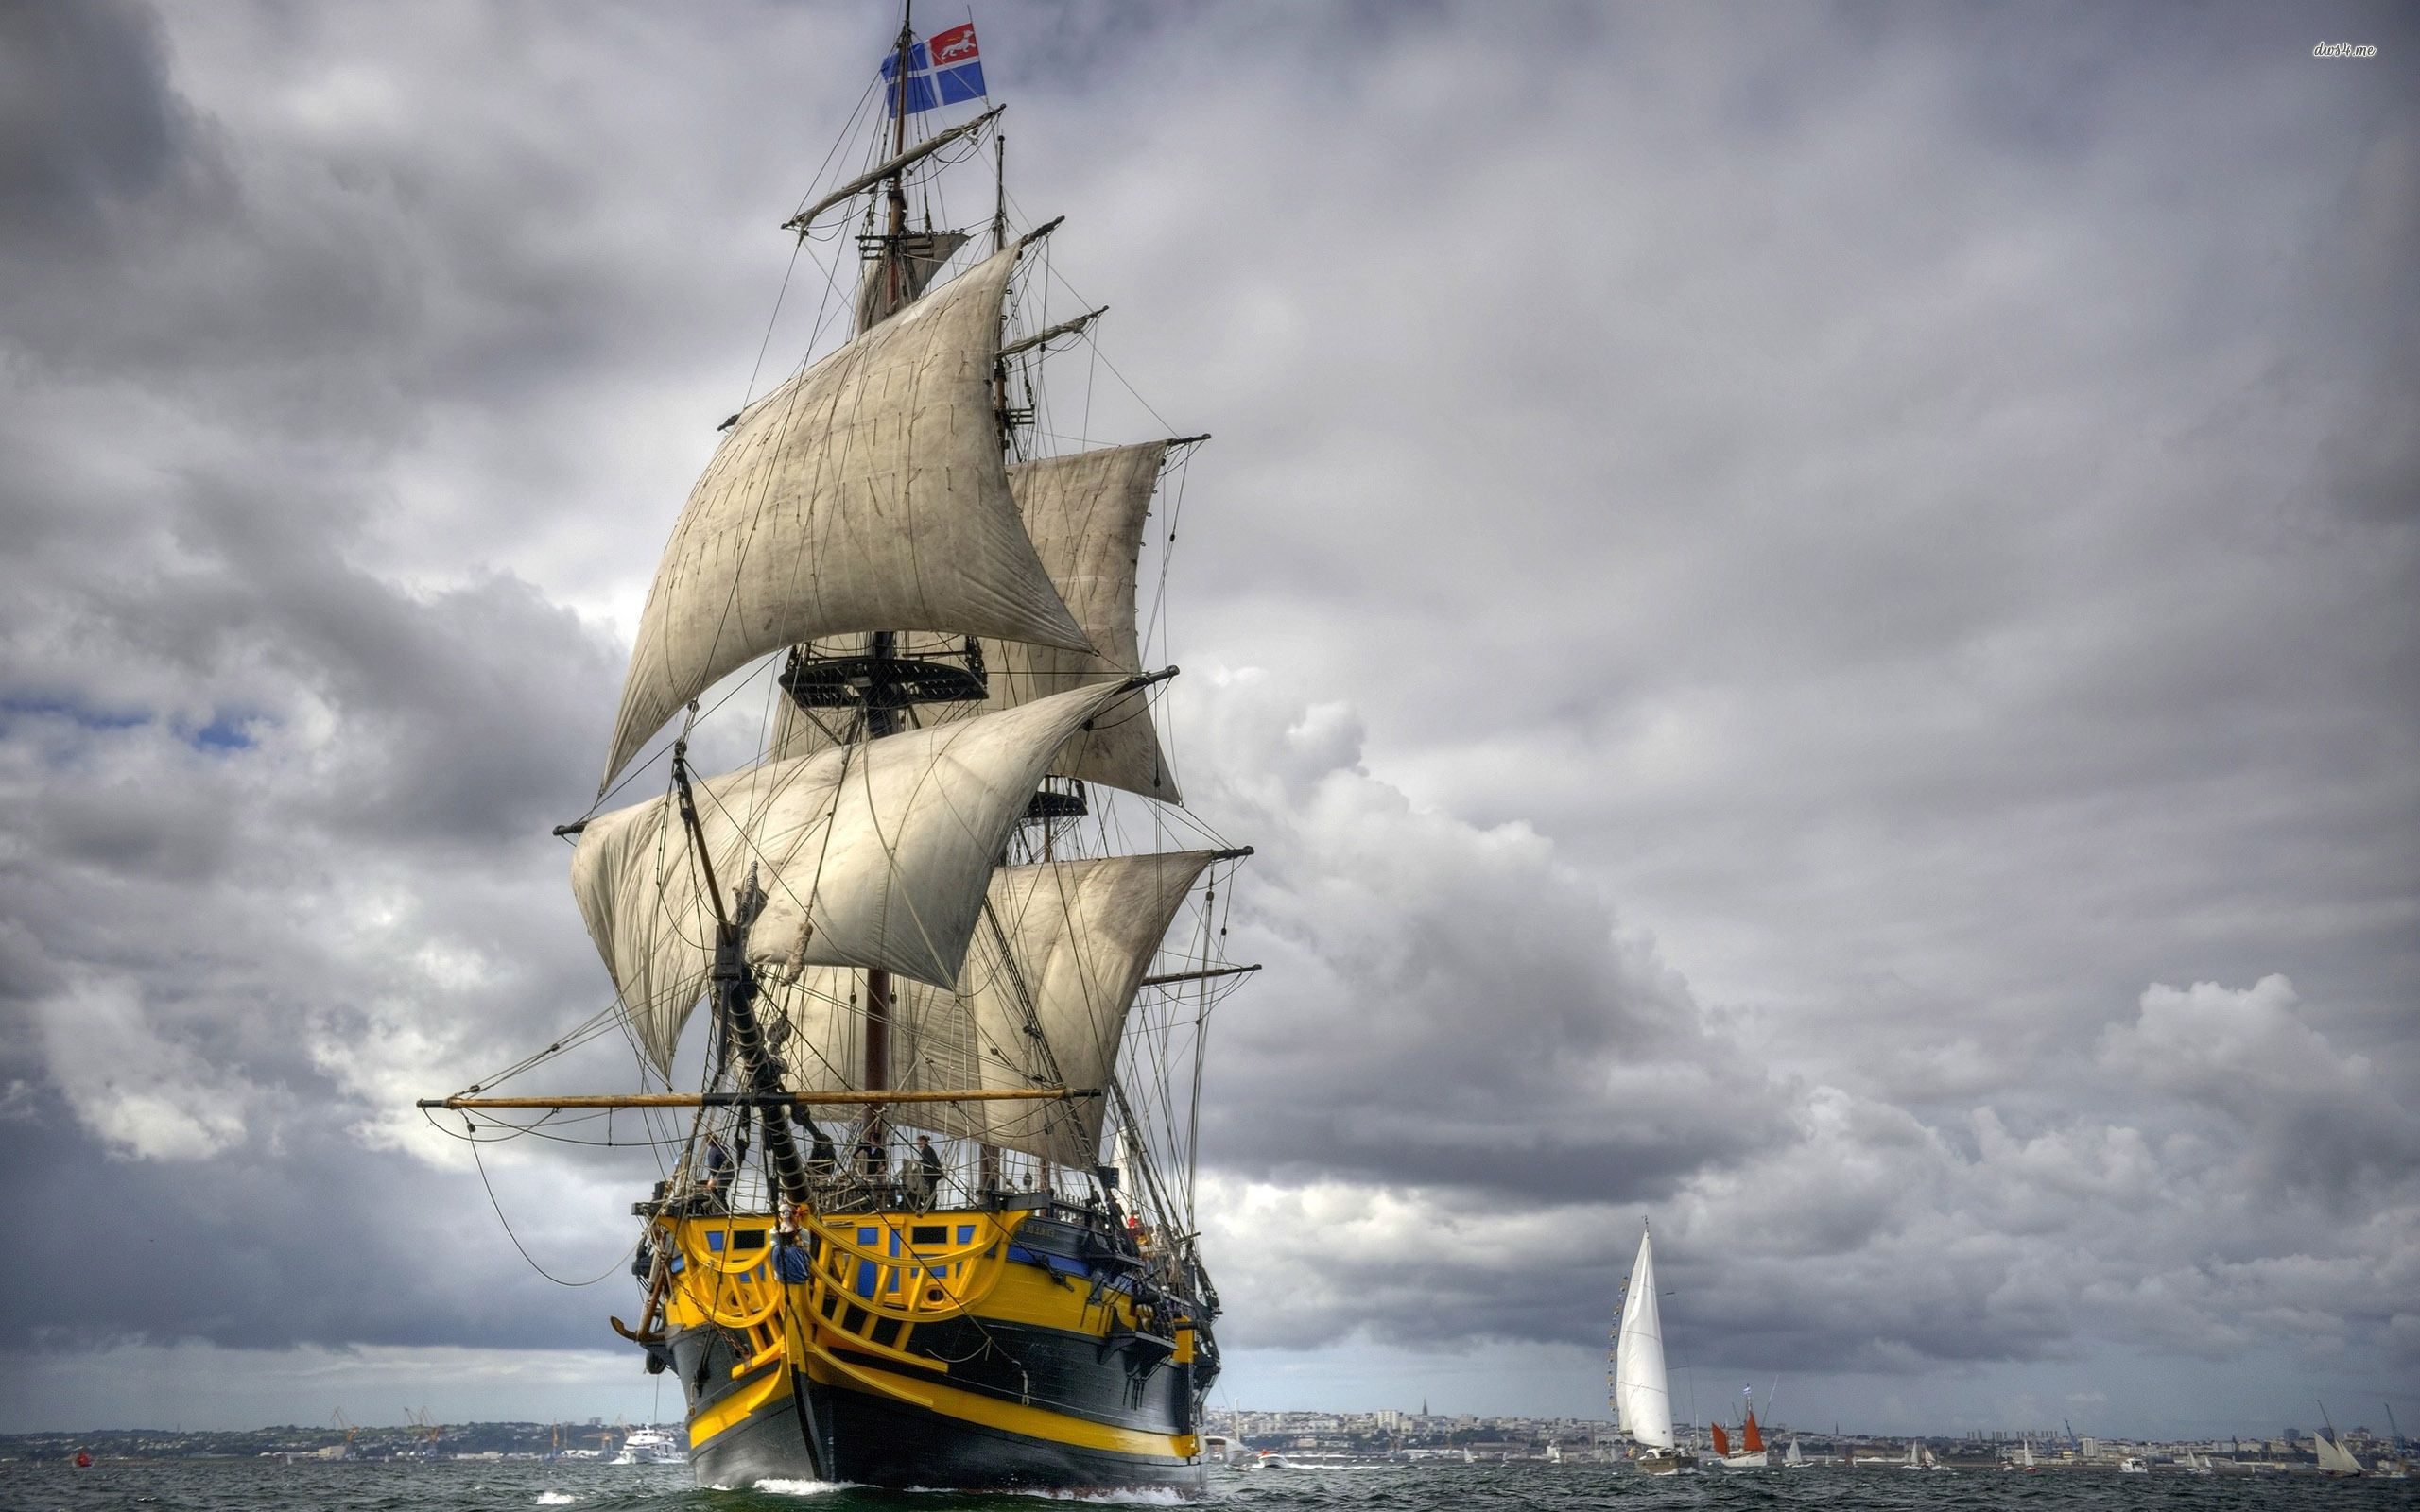 بک گراند کشتی بادبانی قشنگ با بدنه چوبی به رنگ زرد آبی سیاه